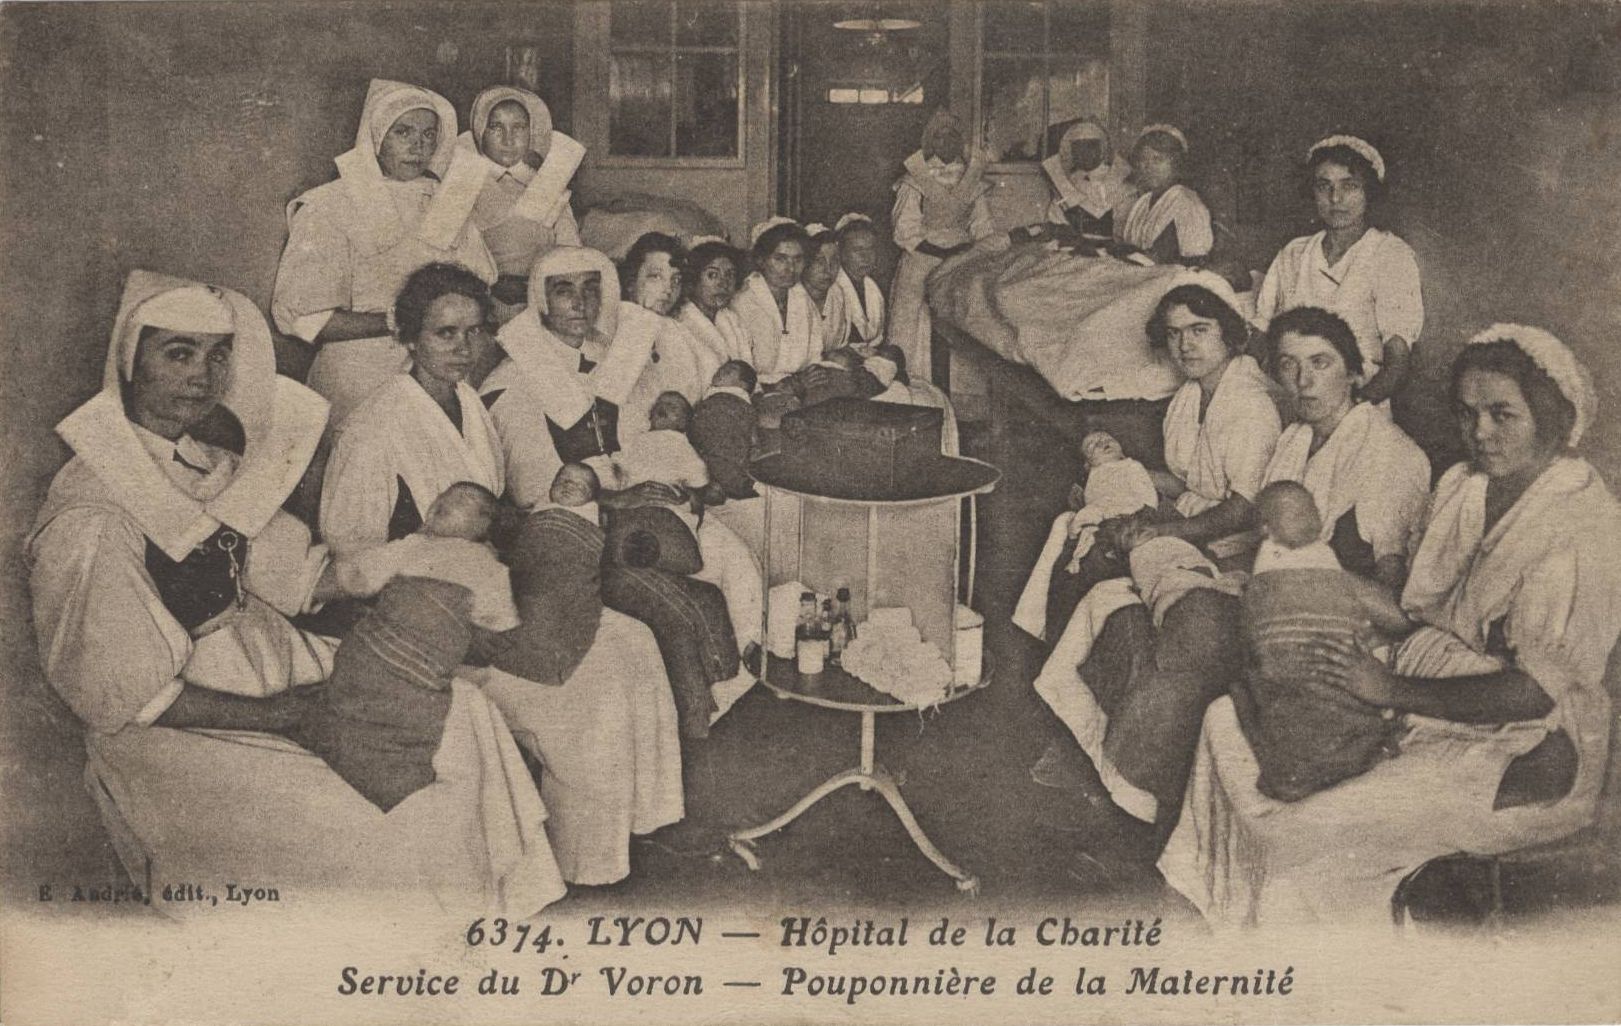 Lyon - Hôpital de la Charité, pouponnière de la maternité : carte postale NB (vers 1910, cote : 4FI/3521)